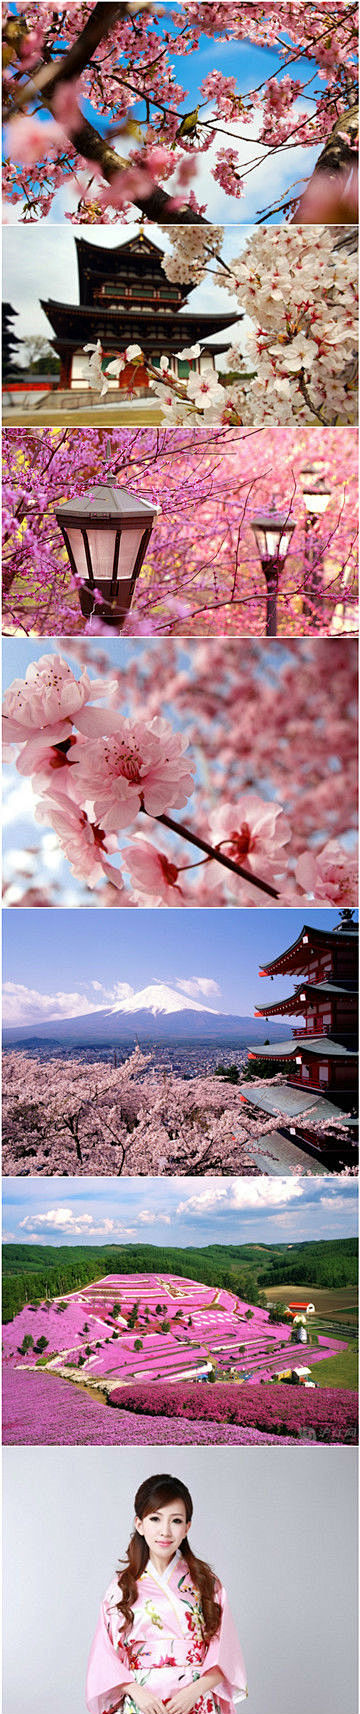 粉色日本
樱花、和服、少女的头簪。
...